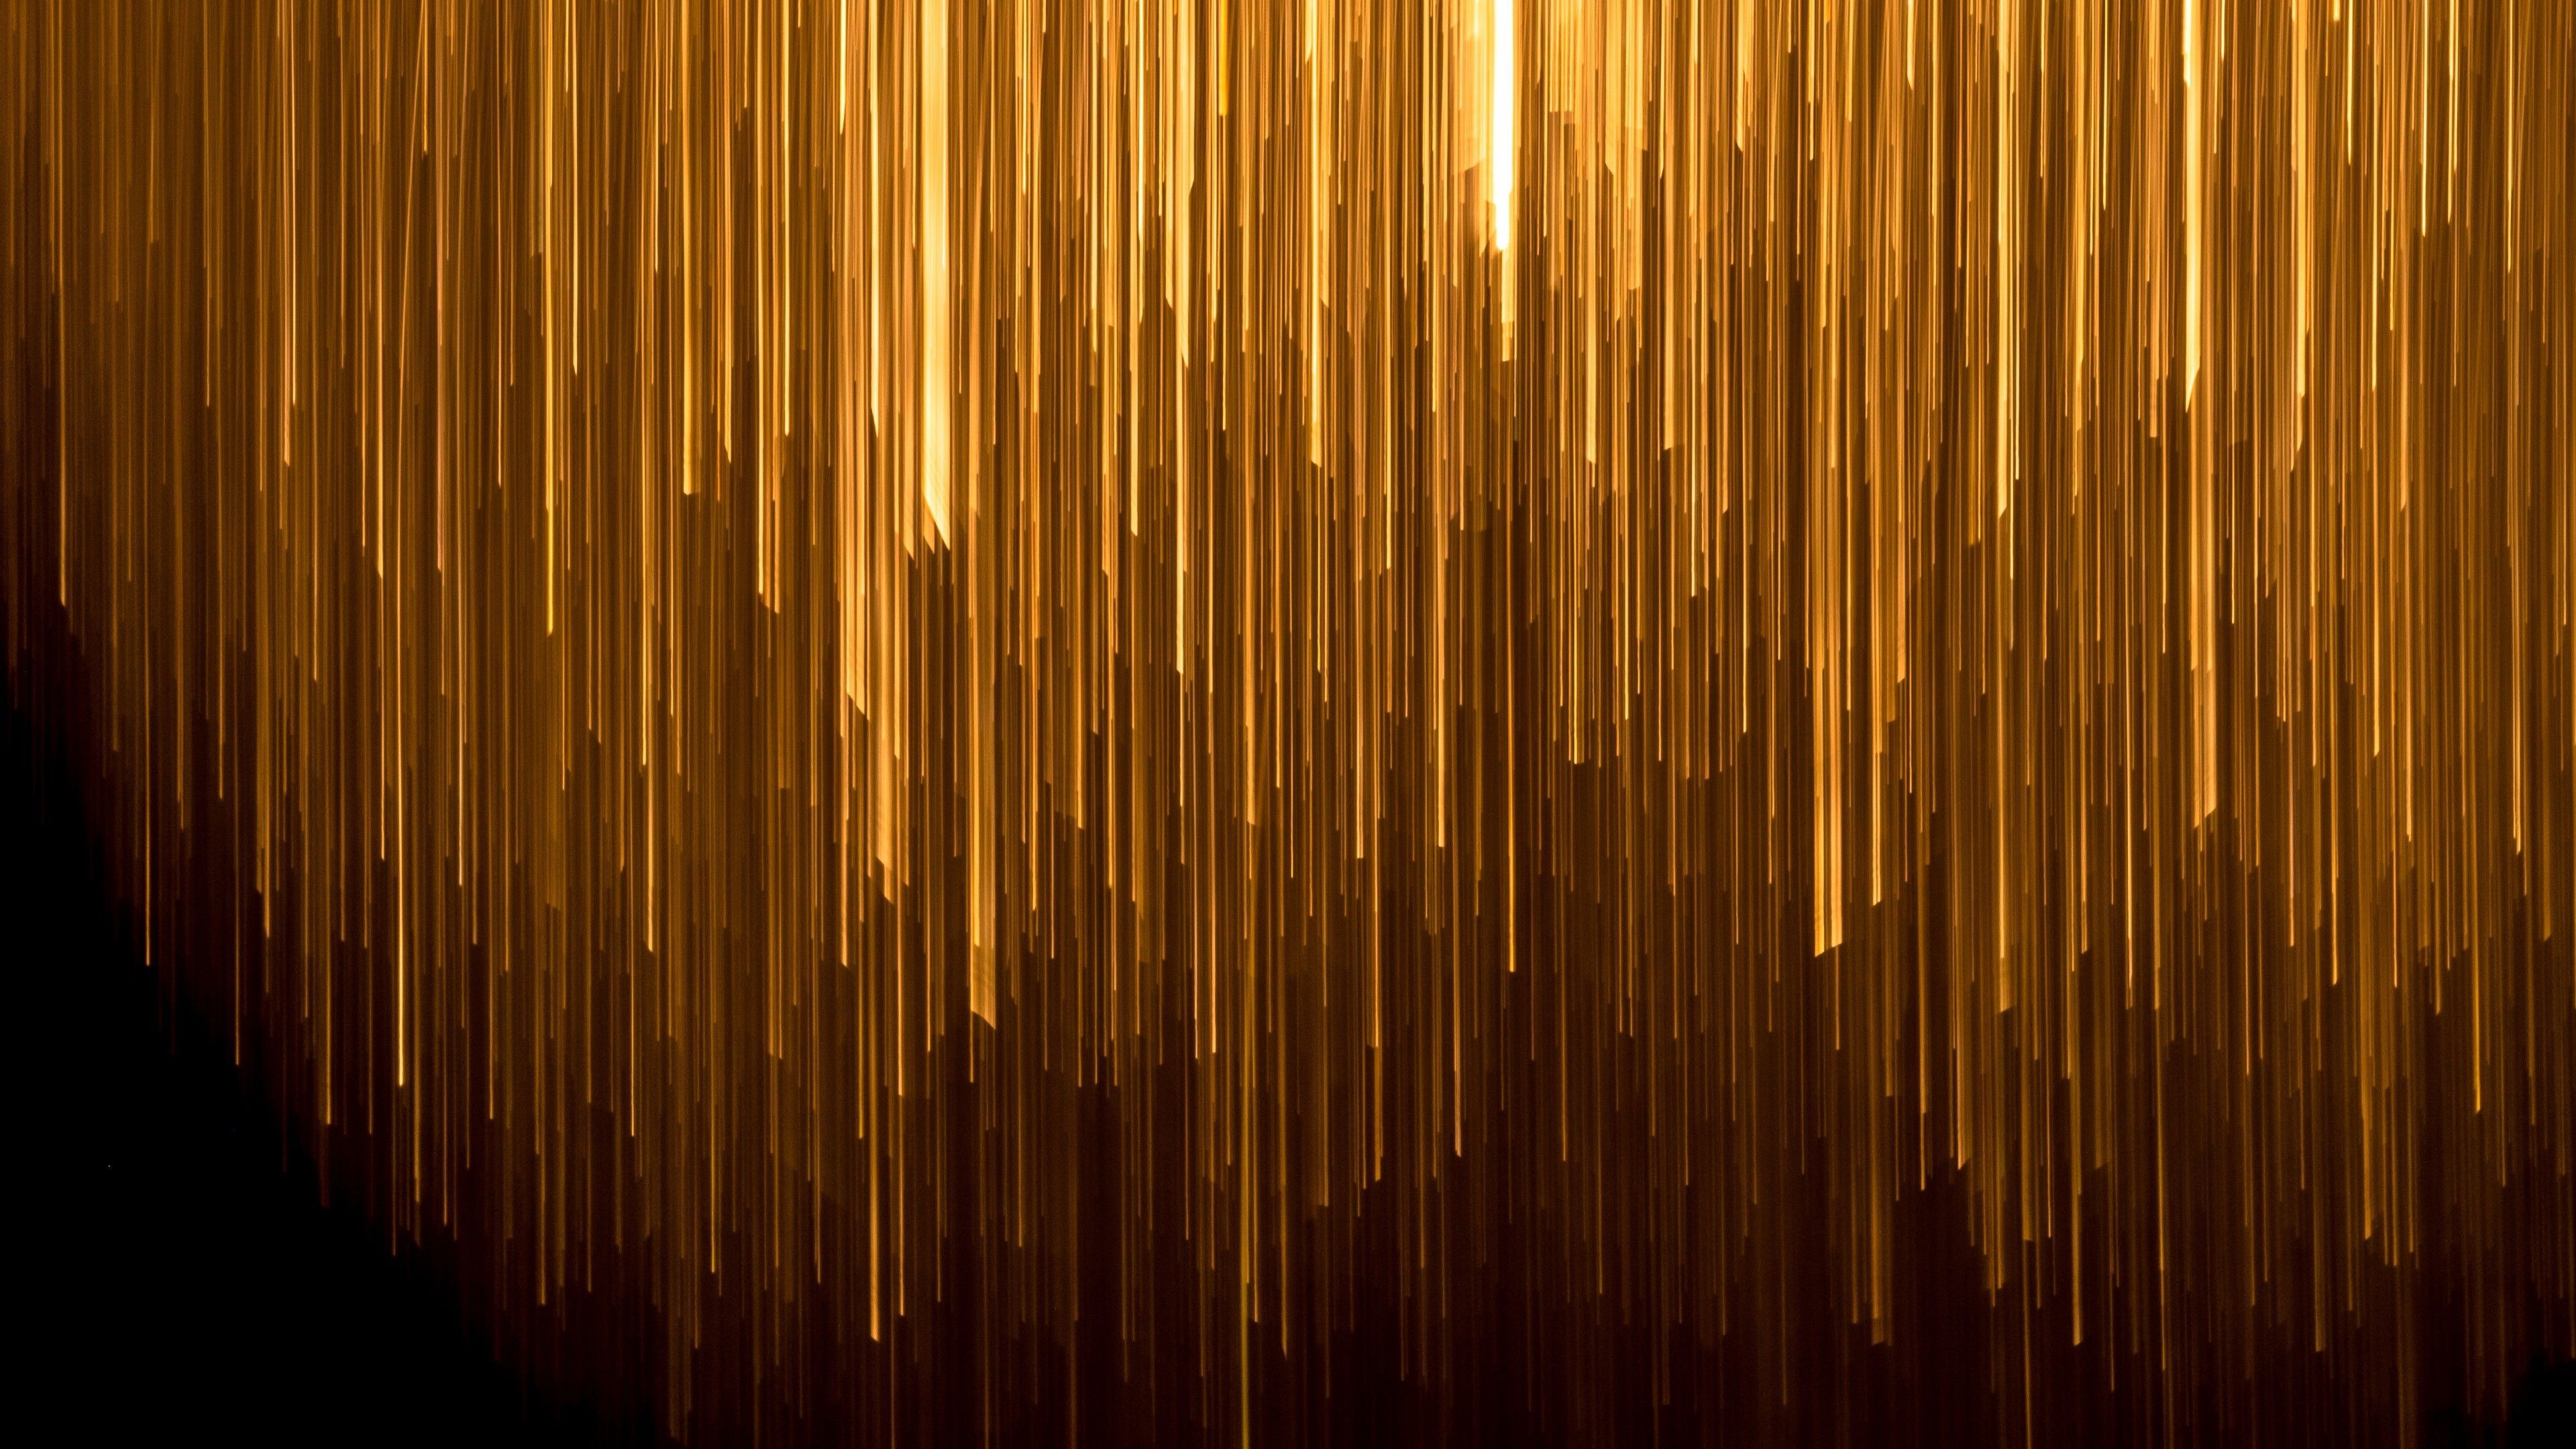 Vàng đen 4k (Dark Gold 4k) Sự kết hợp tuyệt vời giữa màu vàng và đen đã tạo nên loại vàng đen quý phái trong Dark Gold 4k. Một cảm giác đầy mê hoặc khi hình ảnh hiển thị các chi tiết siêu sắc nét.